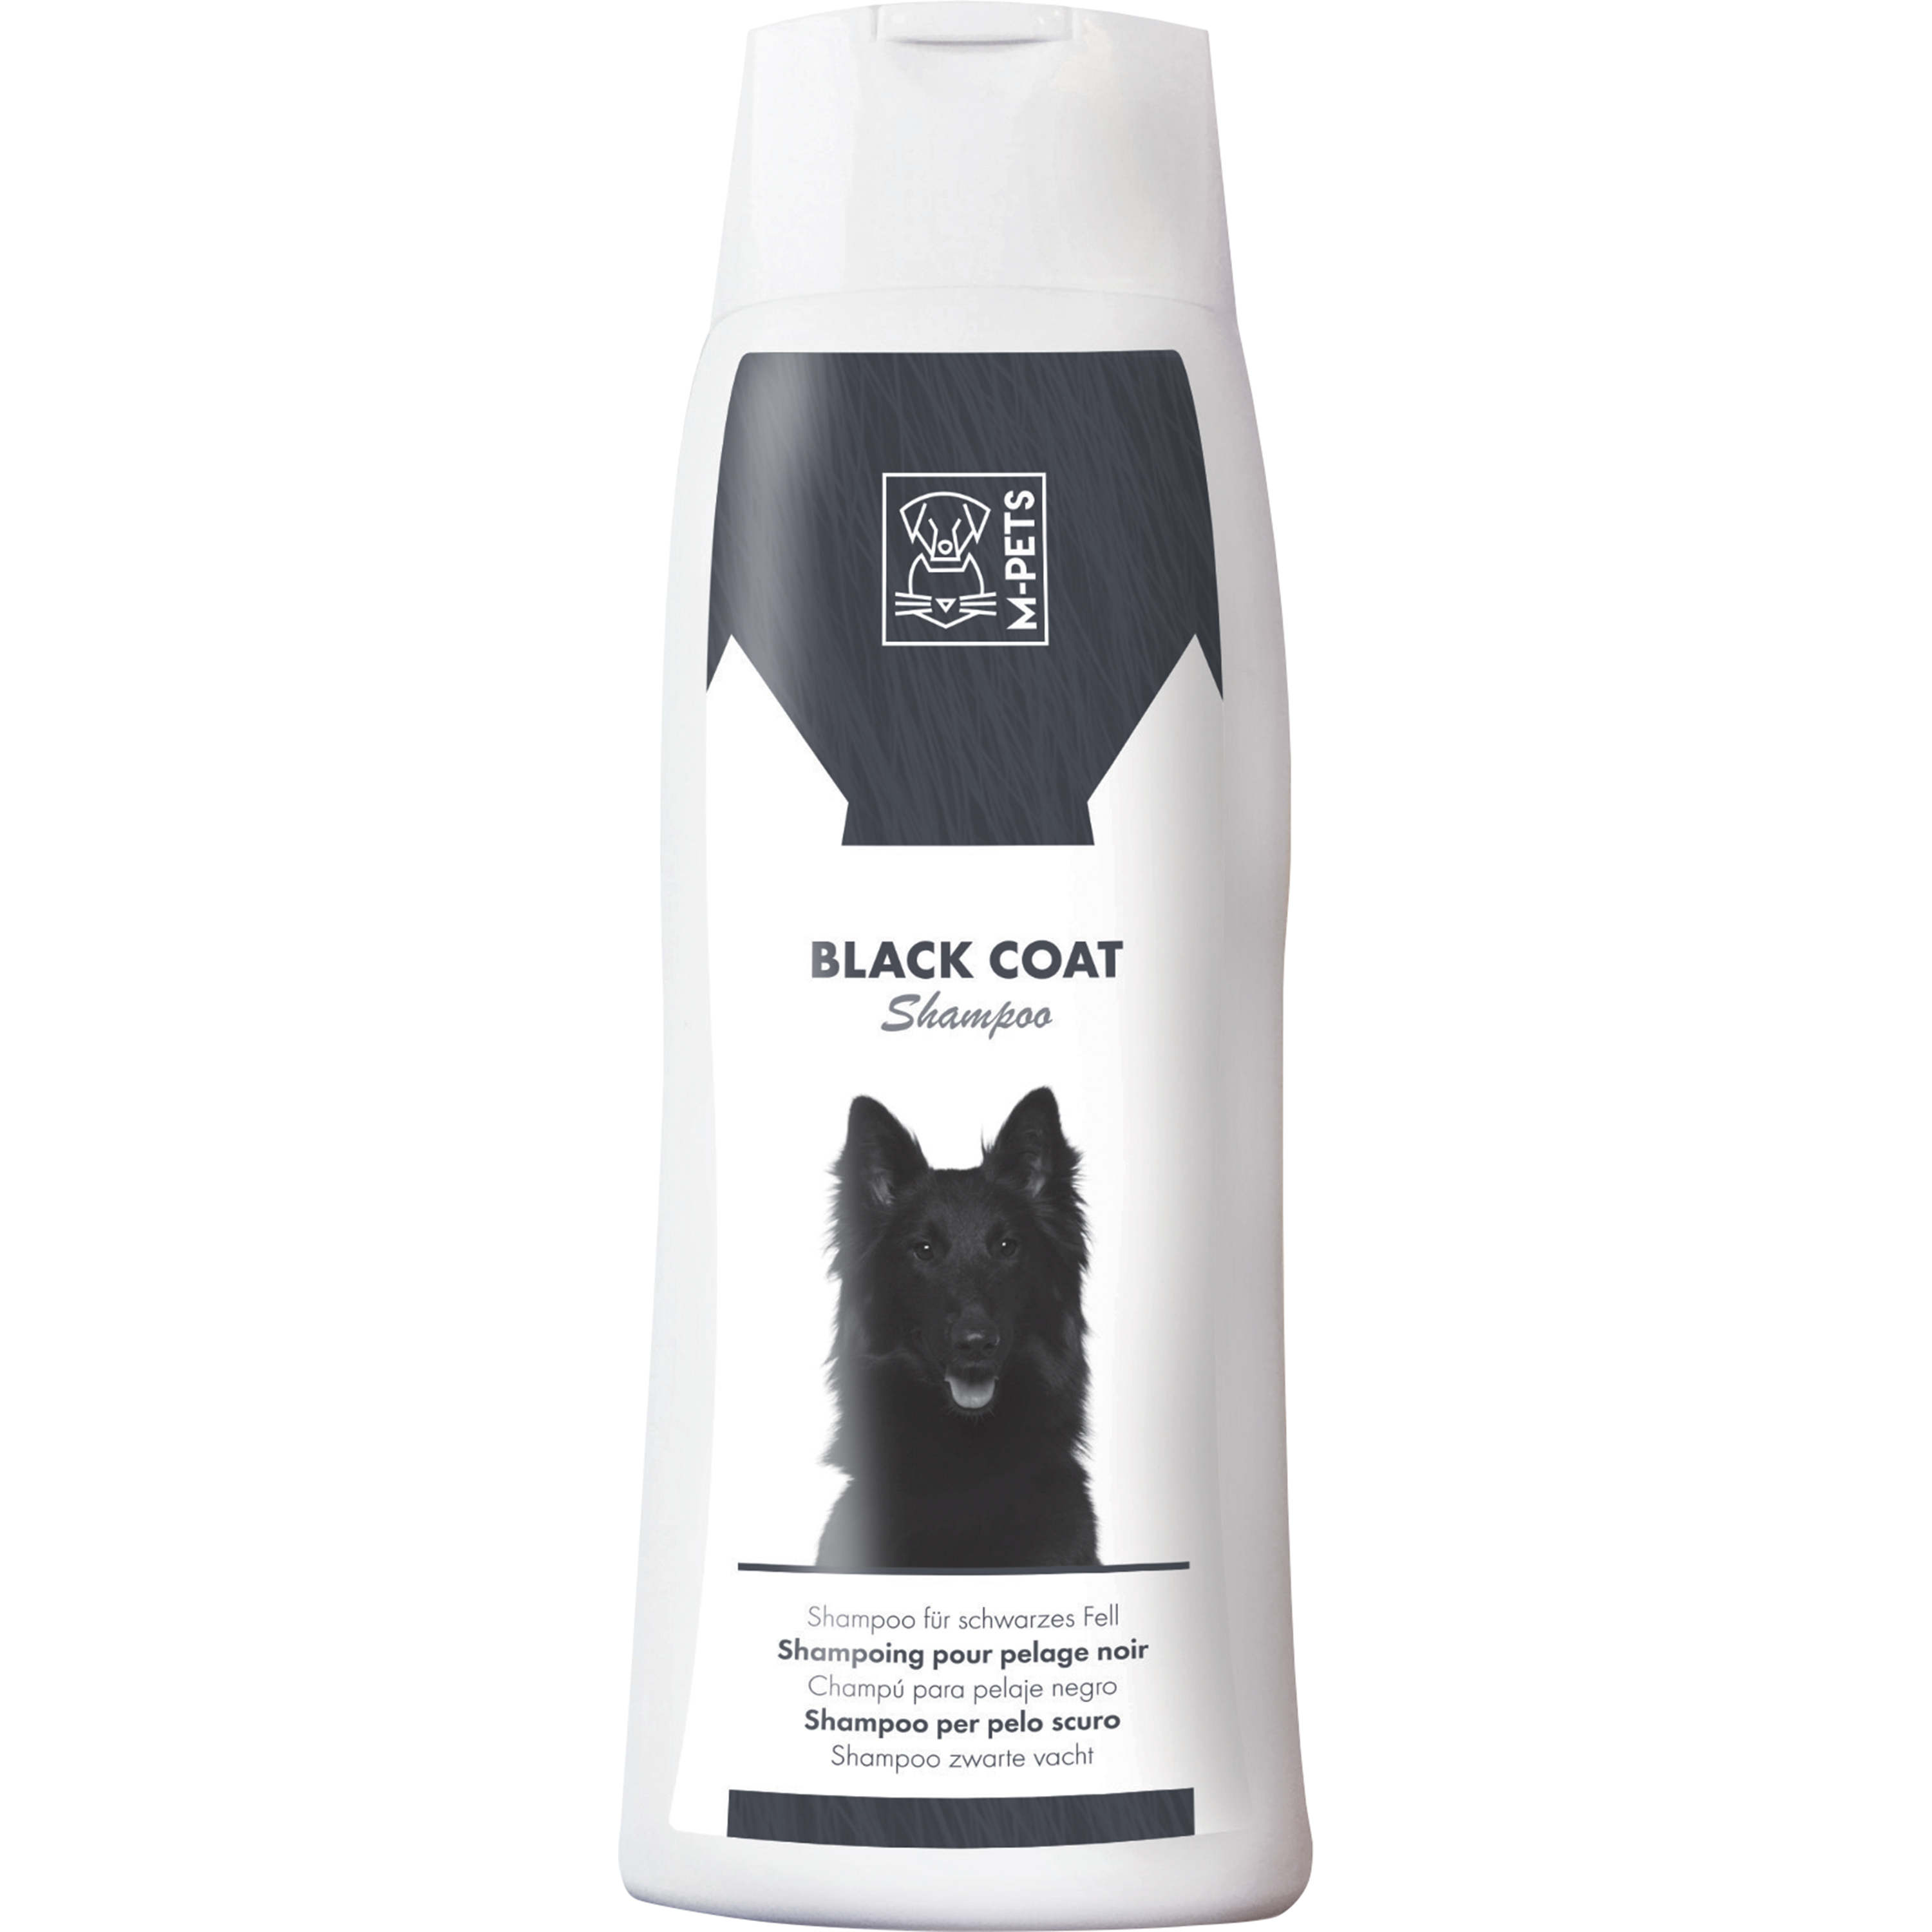 Hundschampo M-Pets Black för mörk päls 250ml